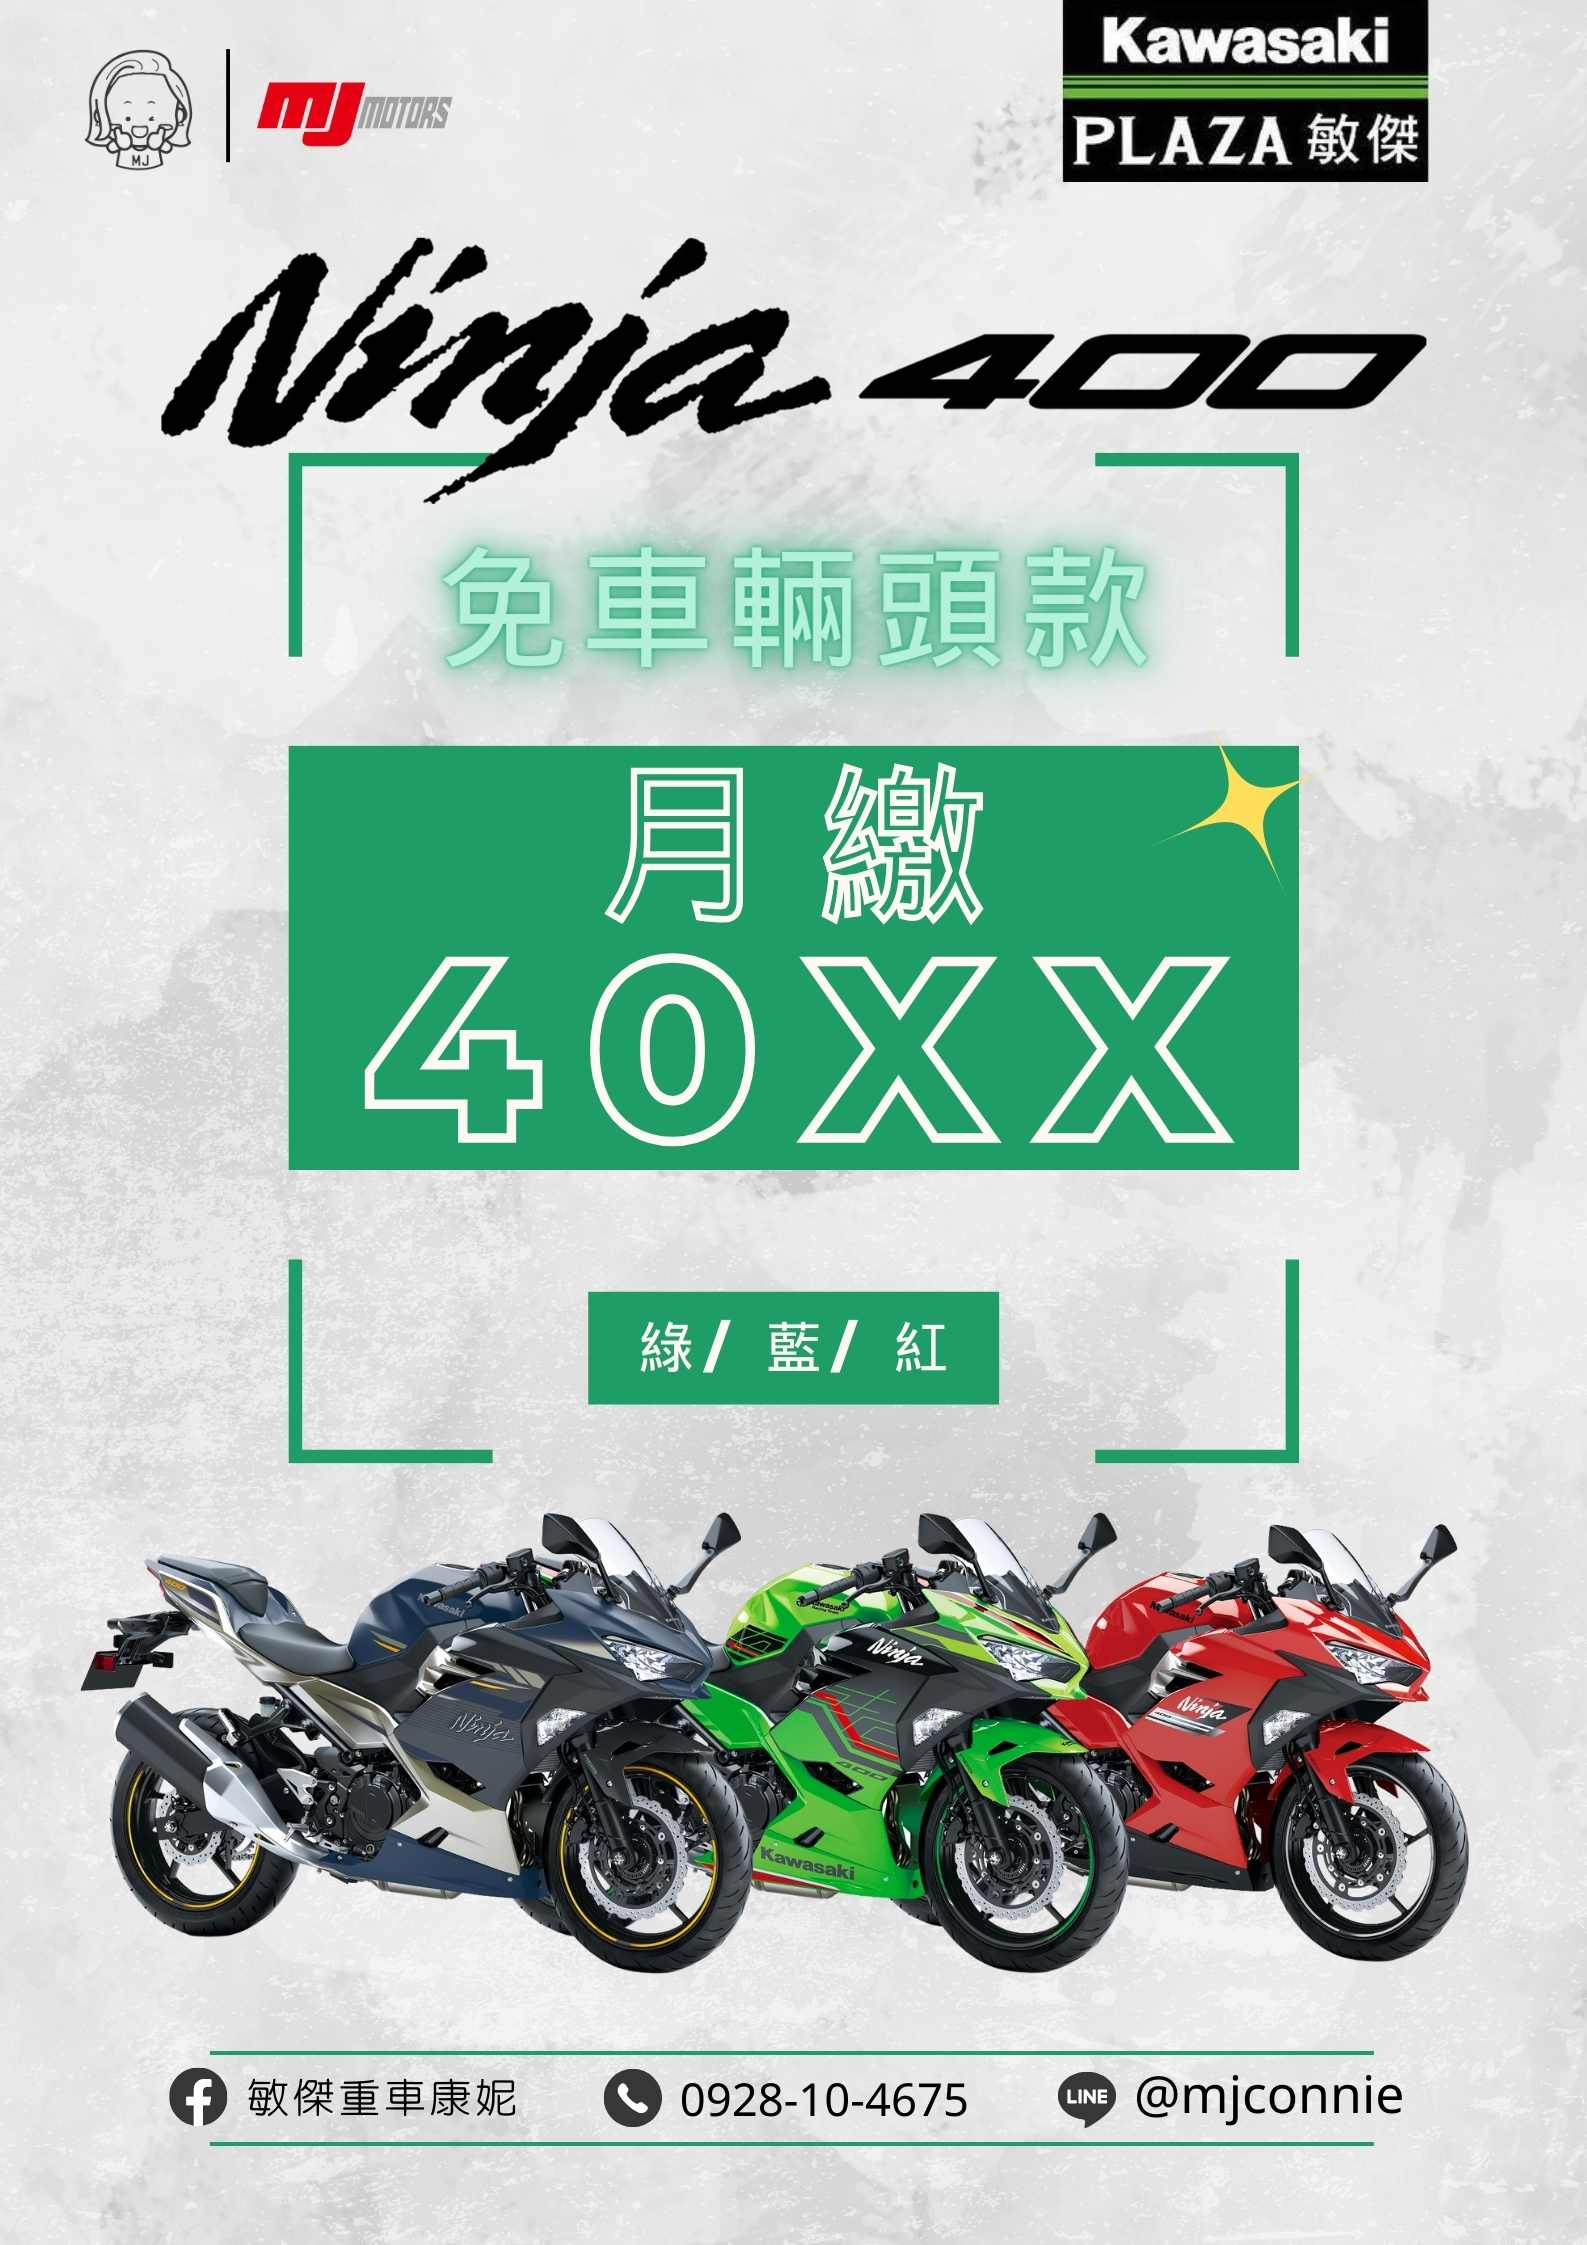 【敏傑車業資深銷售專員 康妮 Connie】KAWASAKI NINJA400 - 「Webike-摩托車市」 『敏傑康妮』Kawasaki Ninja400 最好上手的黃牌仿賽 三年保固 不限里程 給你最棒的方案 最優的服務